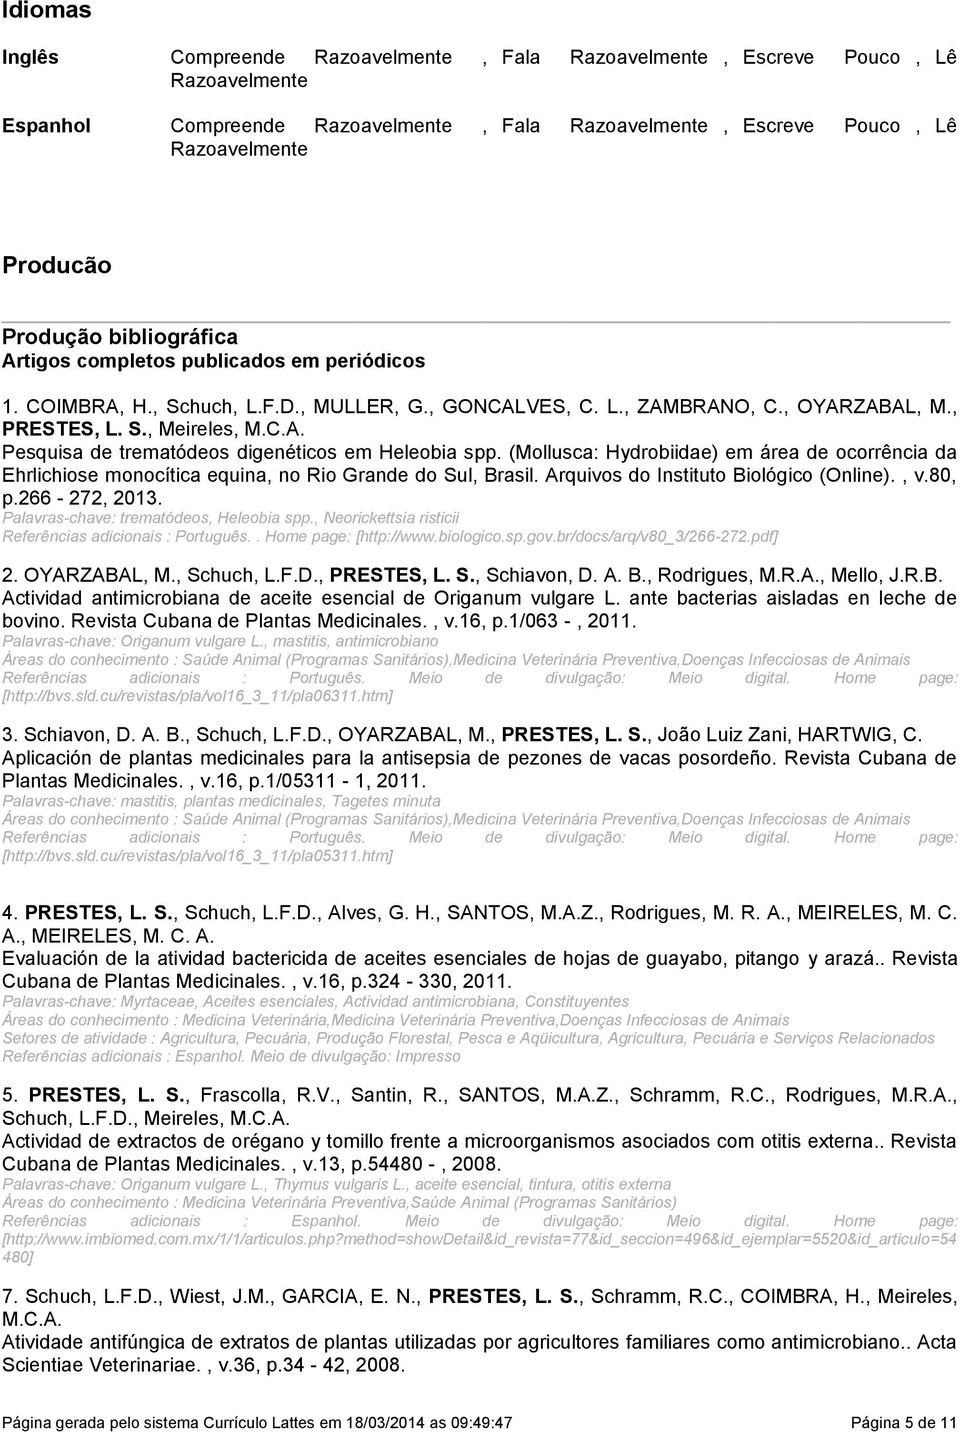 digenéticos em Heleobia spp (Mollusca: Hydrobiidae) em área de ocorrência da Ehrlichiose monocítica equina, no Rio Grande do Sul, Brasil Arquivos do Instituto Biológico (Online), v80, p266-272, 2013